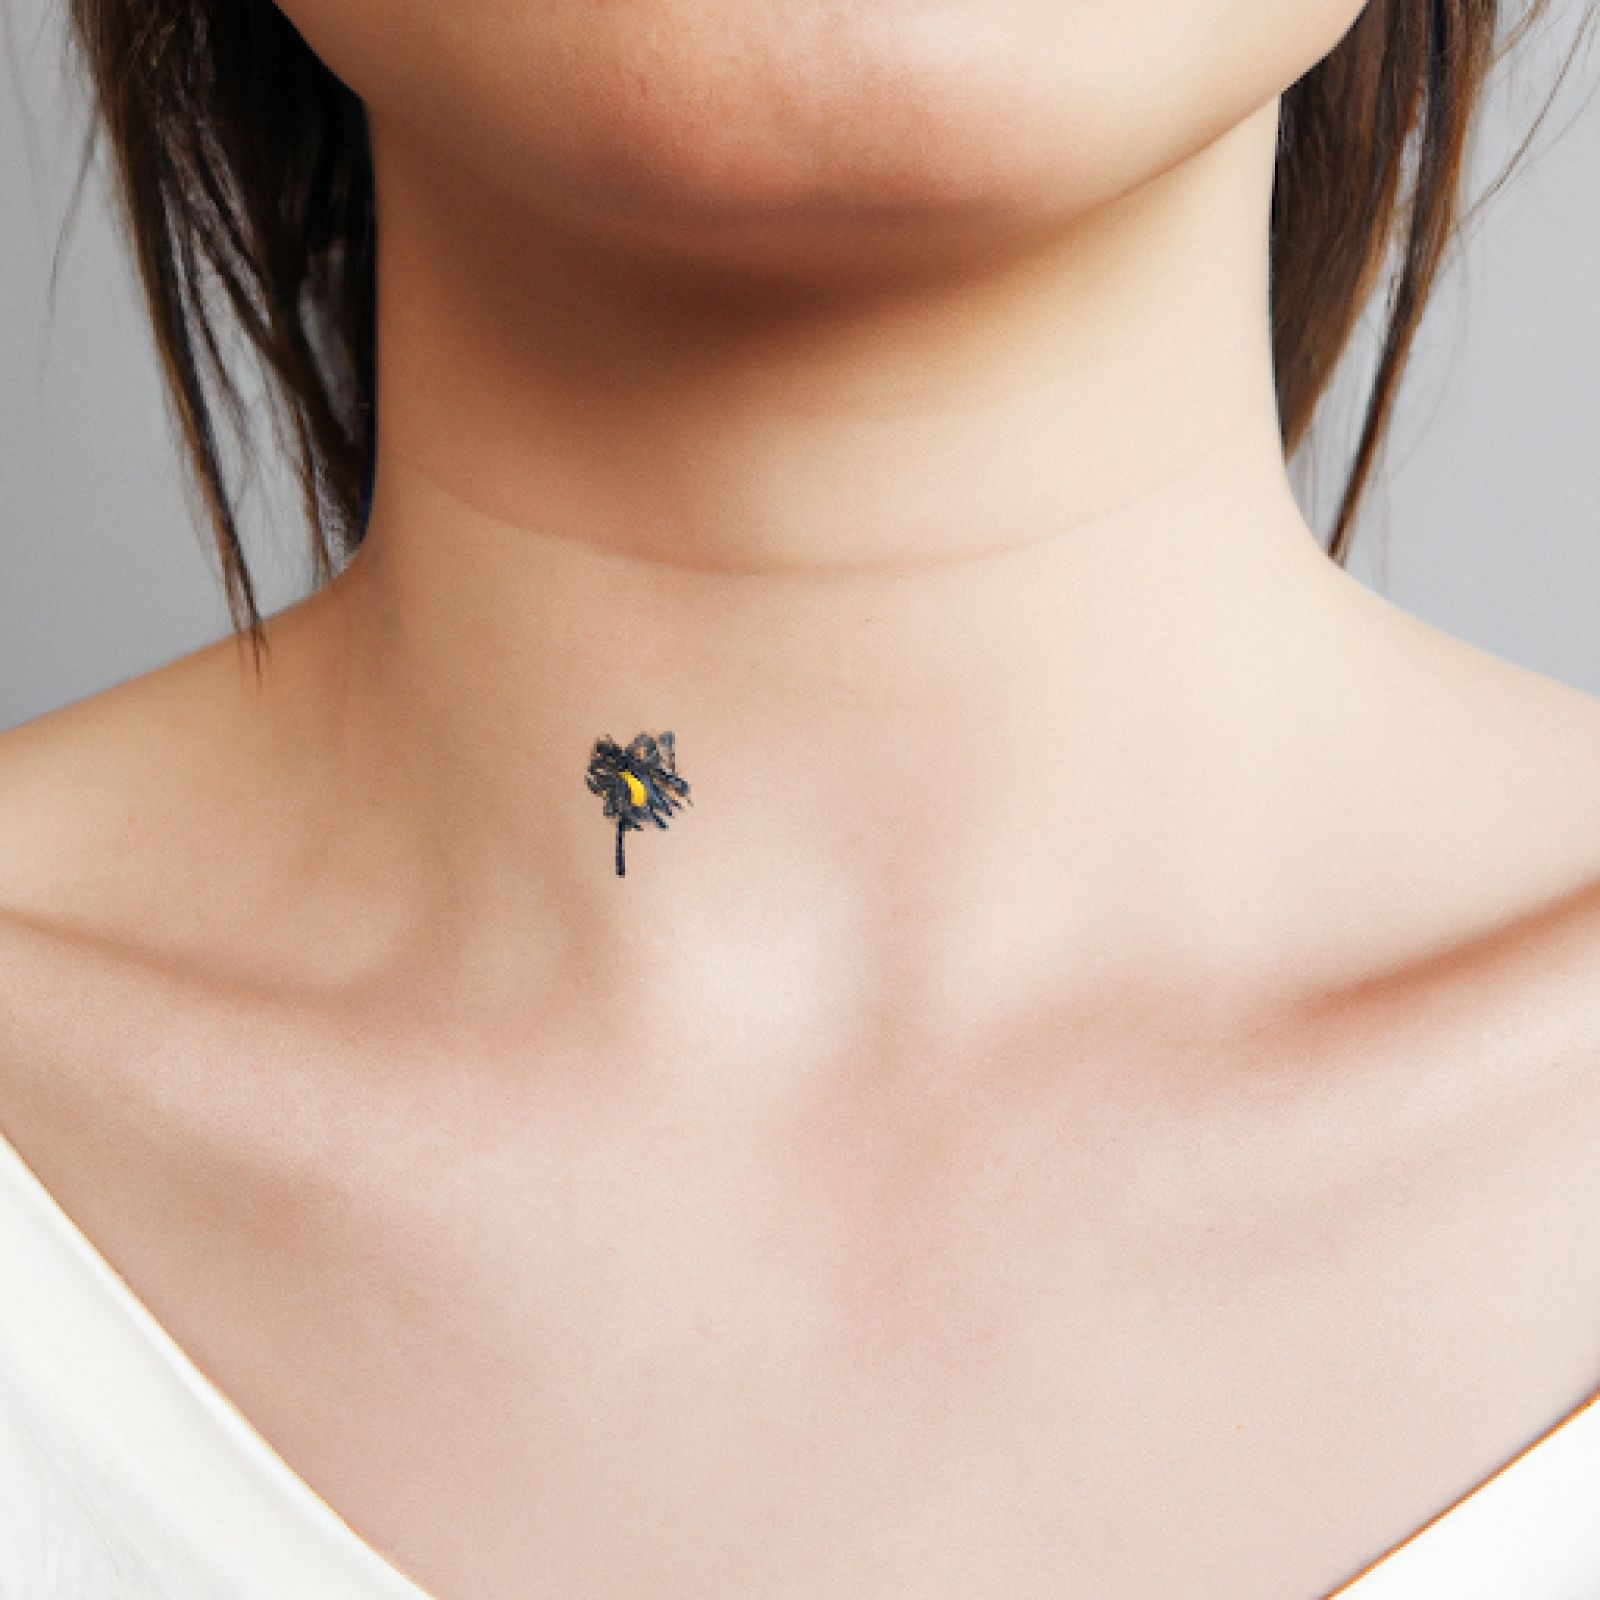 Flower tattoo on neck for women